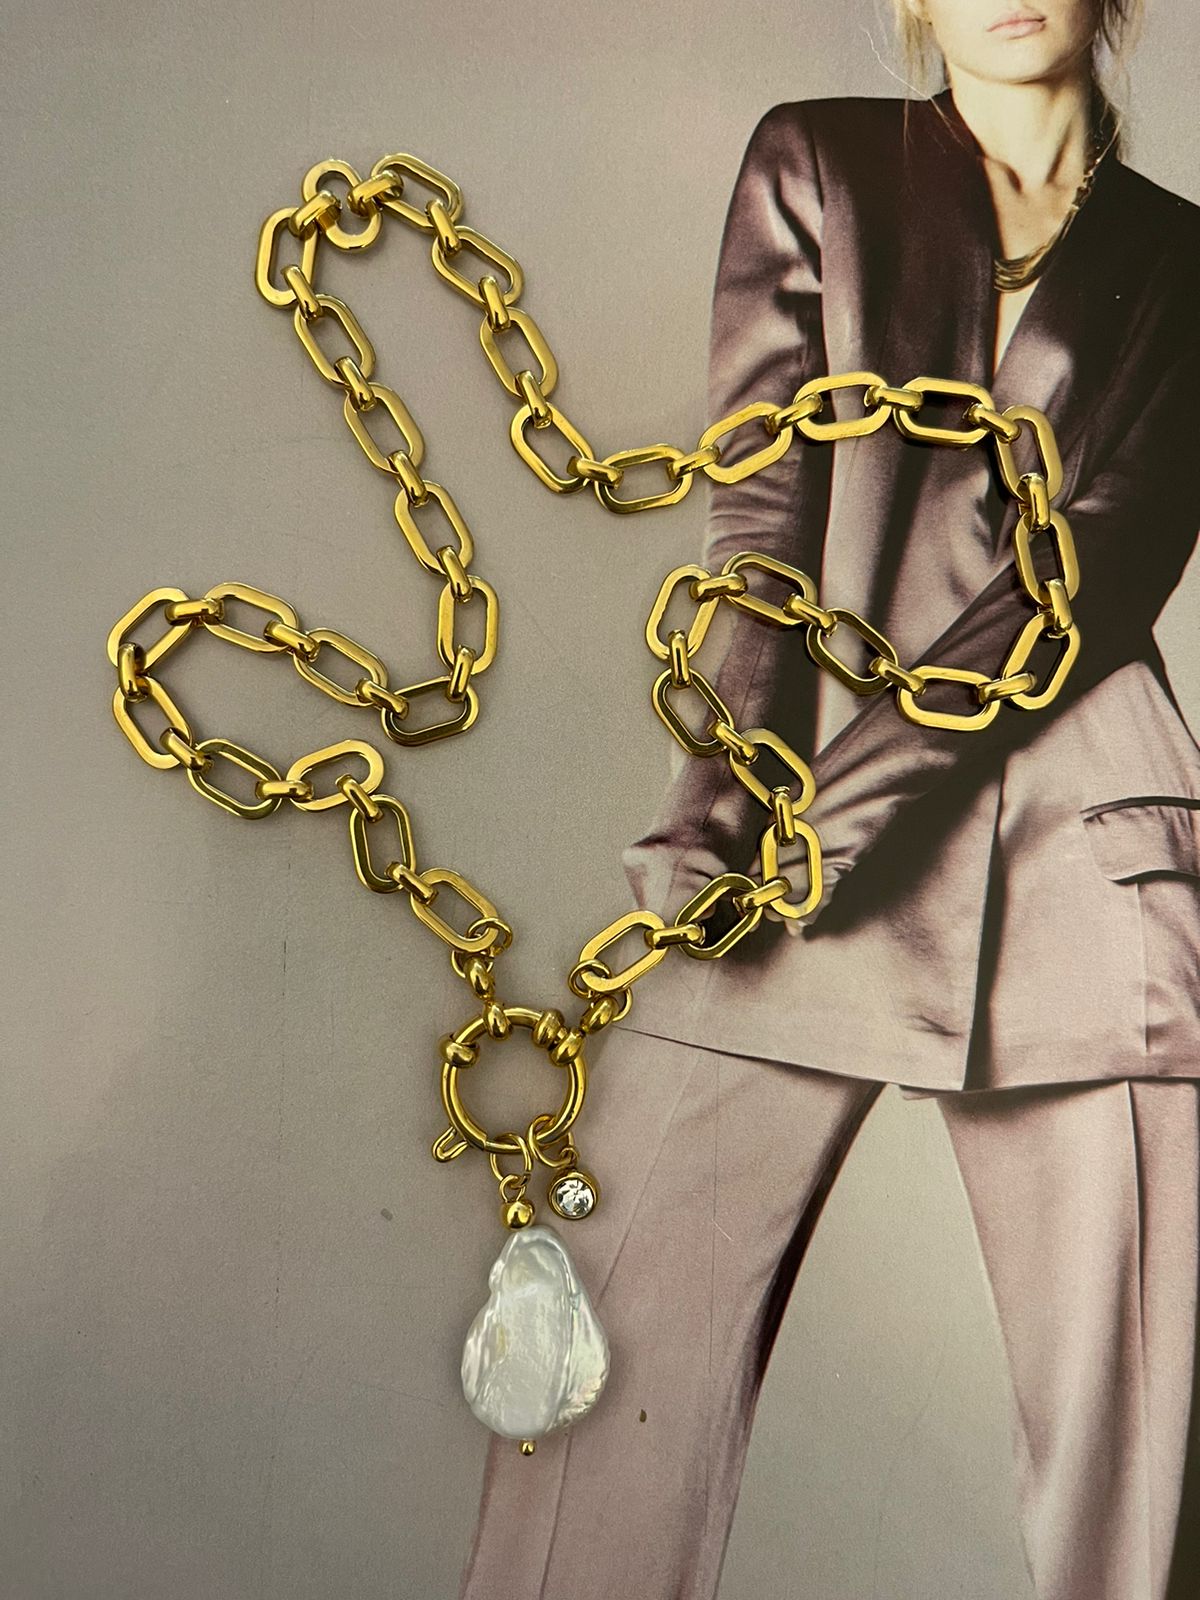 Collar Hippie Chic corto con cadena de acero inoxidable dorado y preciosa perla barroca natural blanca y punto de luz de cristal.